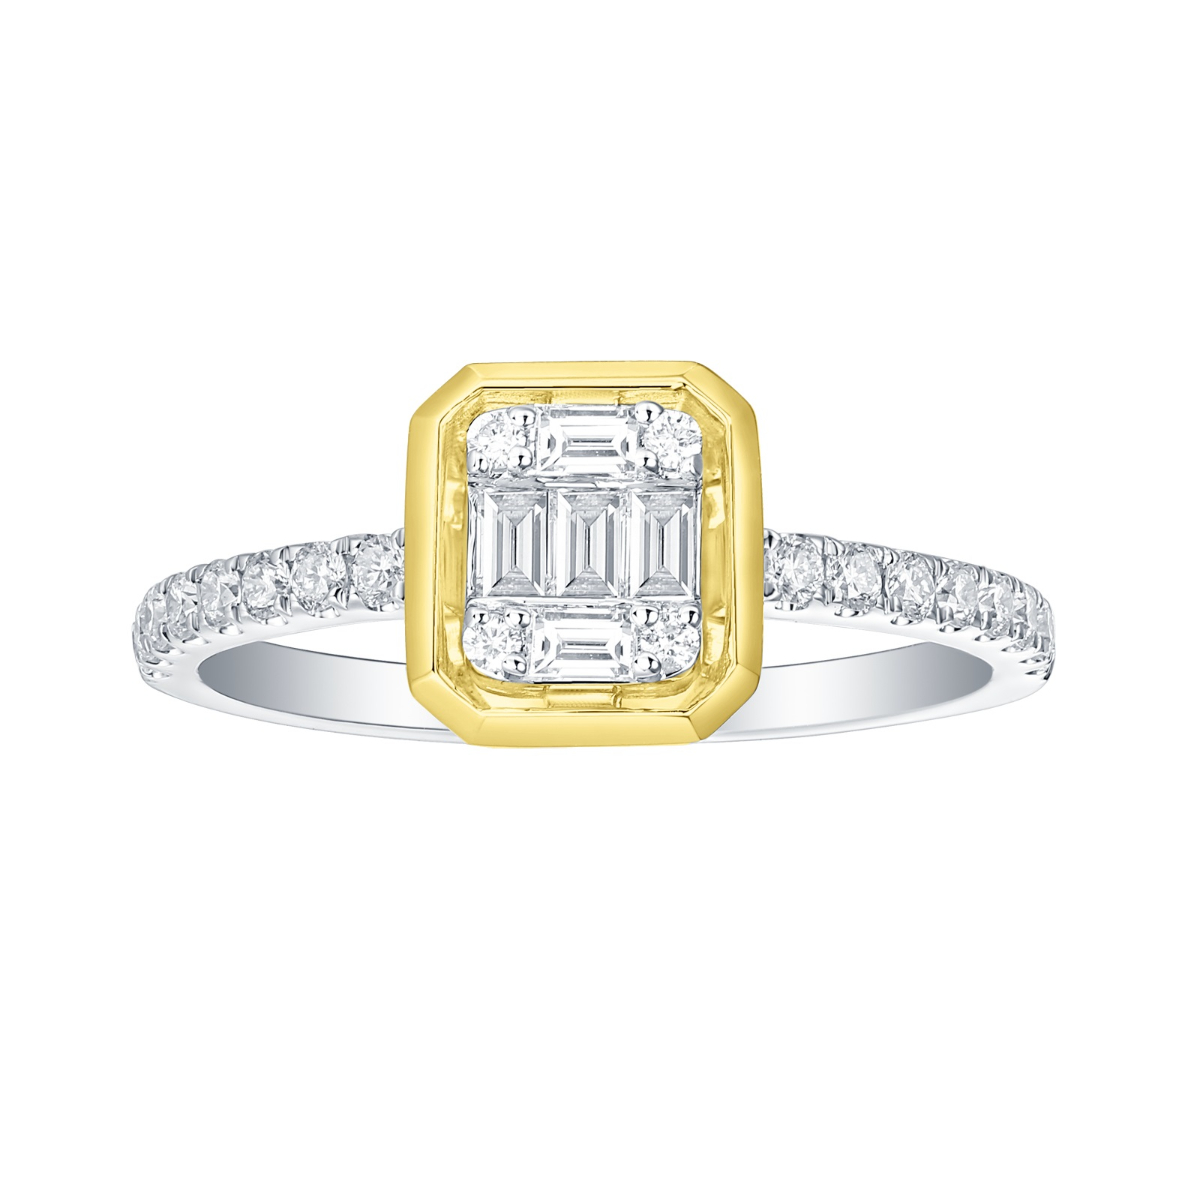 R35851WHT – 18K Yellow and White Gold  Diamond Ring, 0.44 TCW